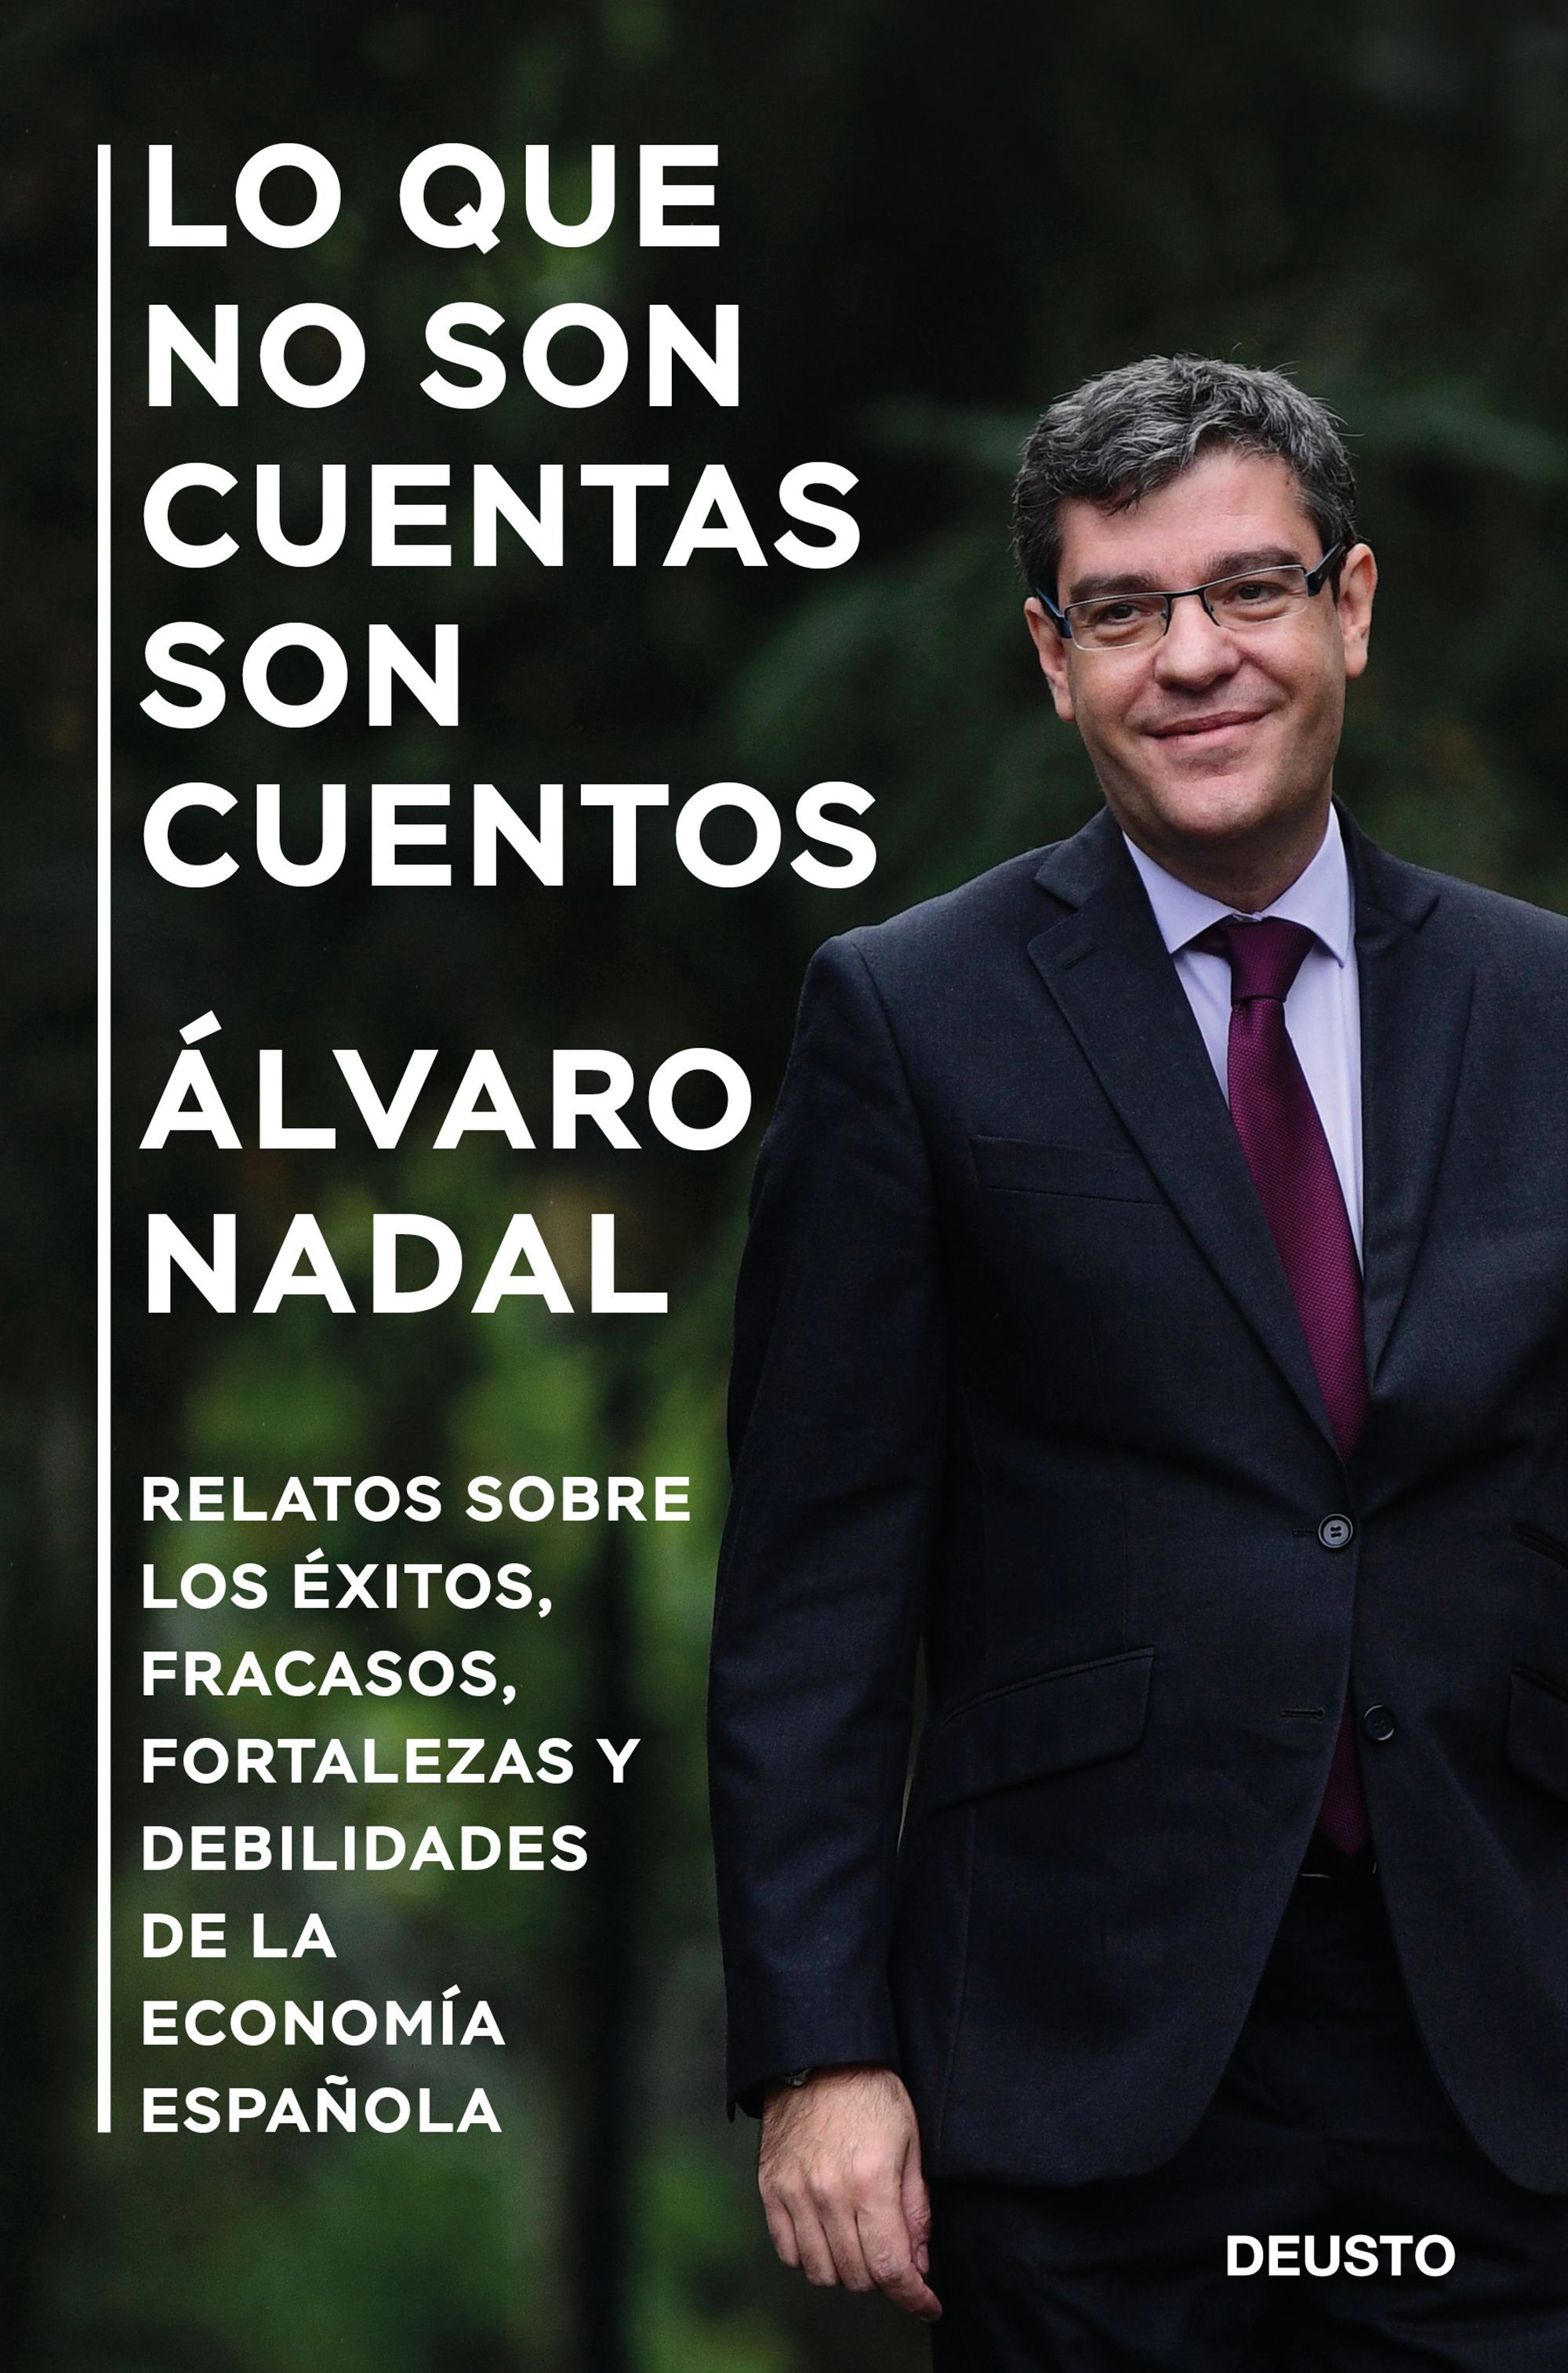 El político Álvaro Nadal acerca la economía al público general con parábolas amenas